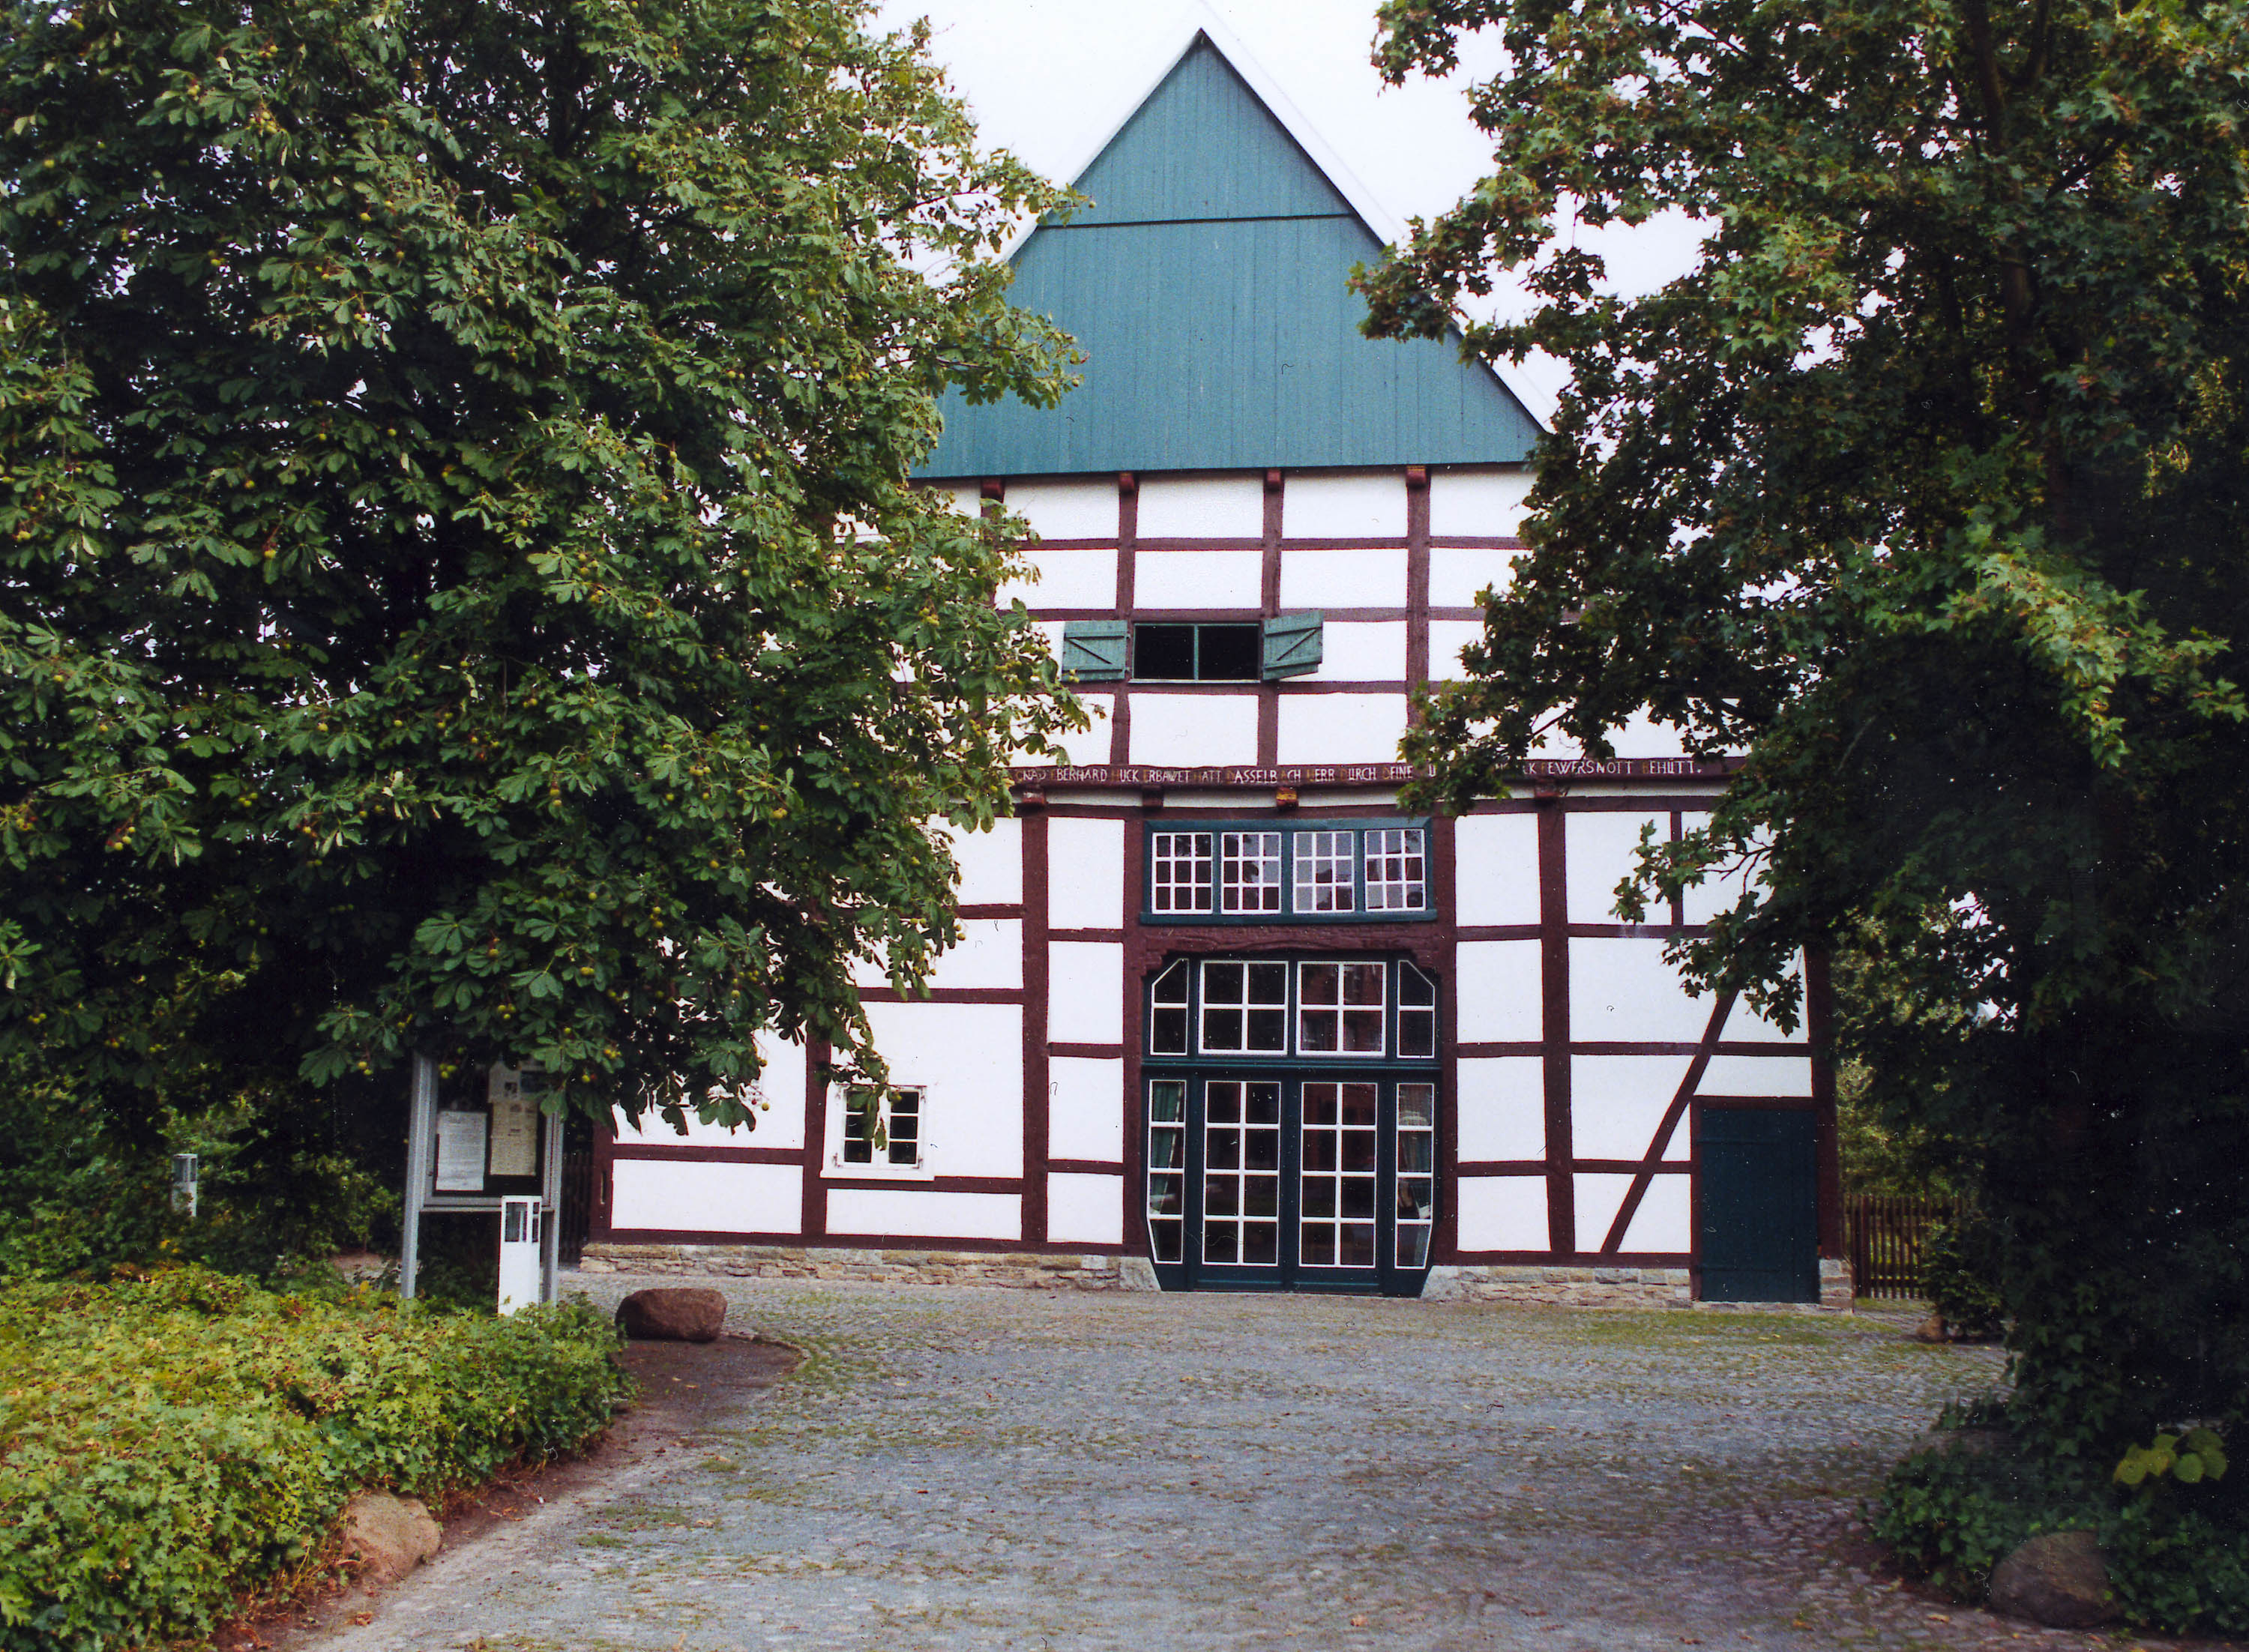 Domhof